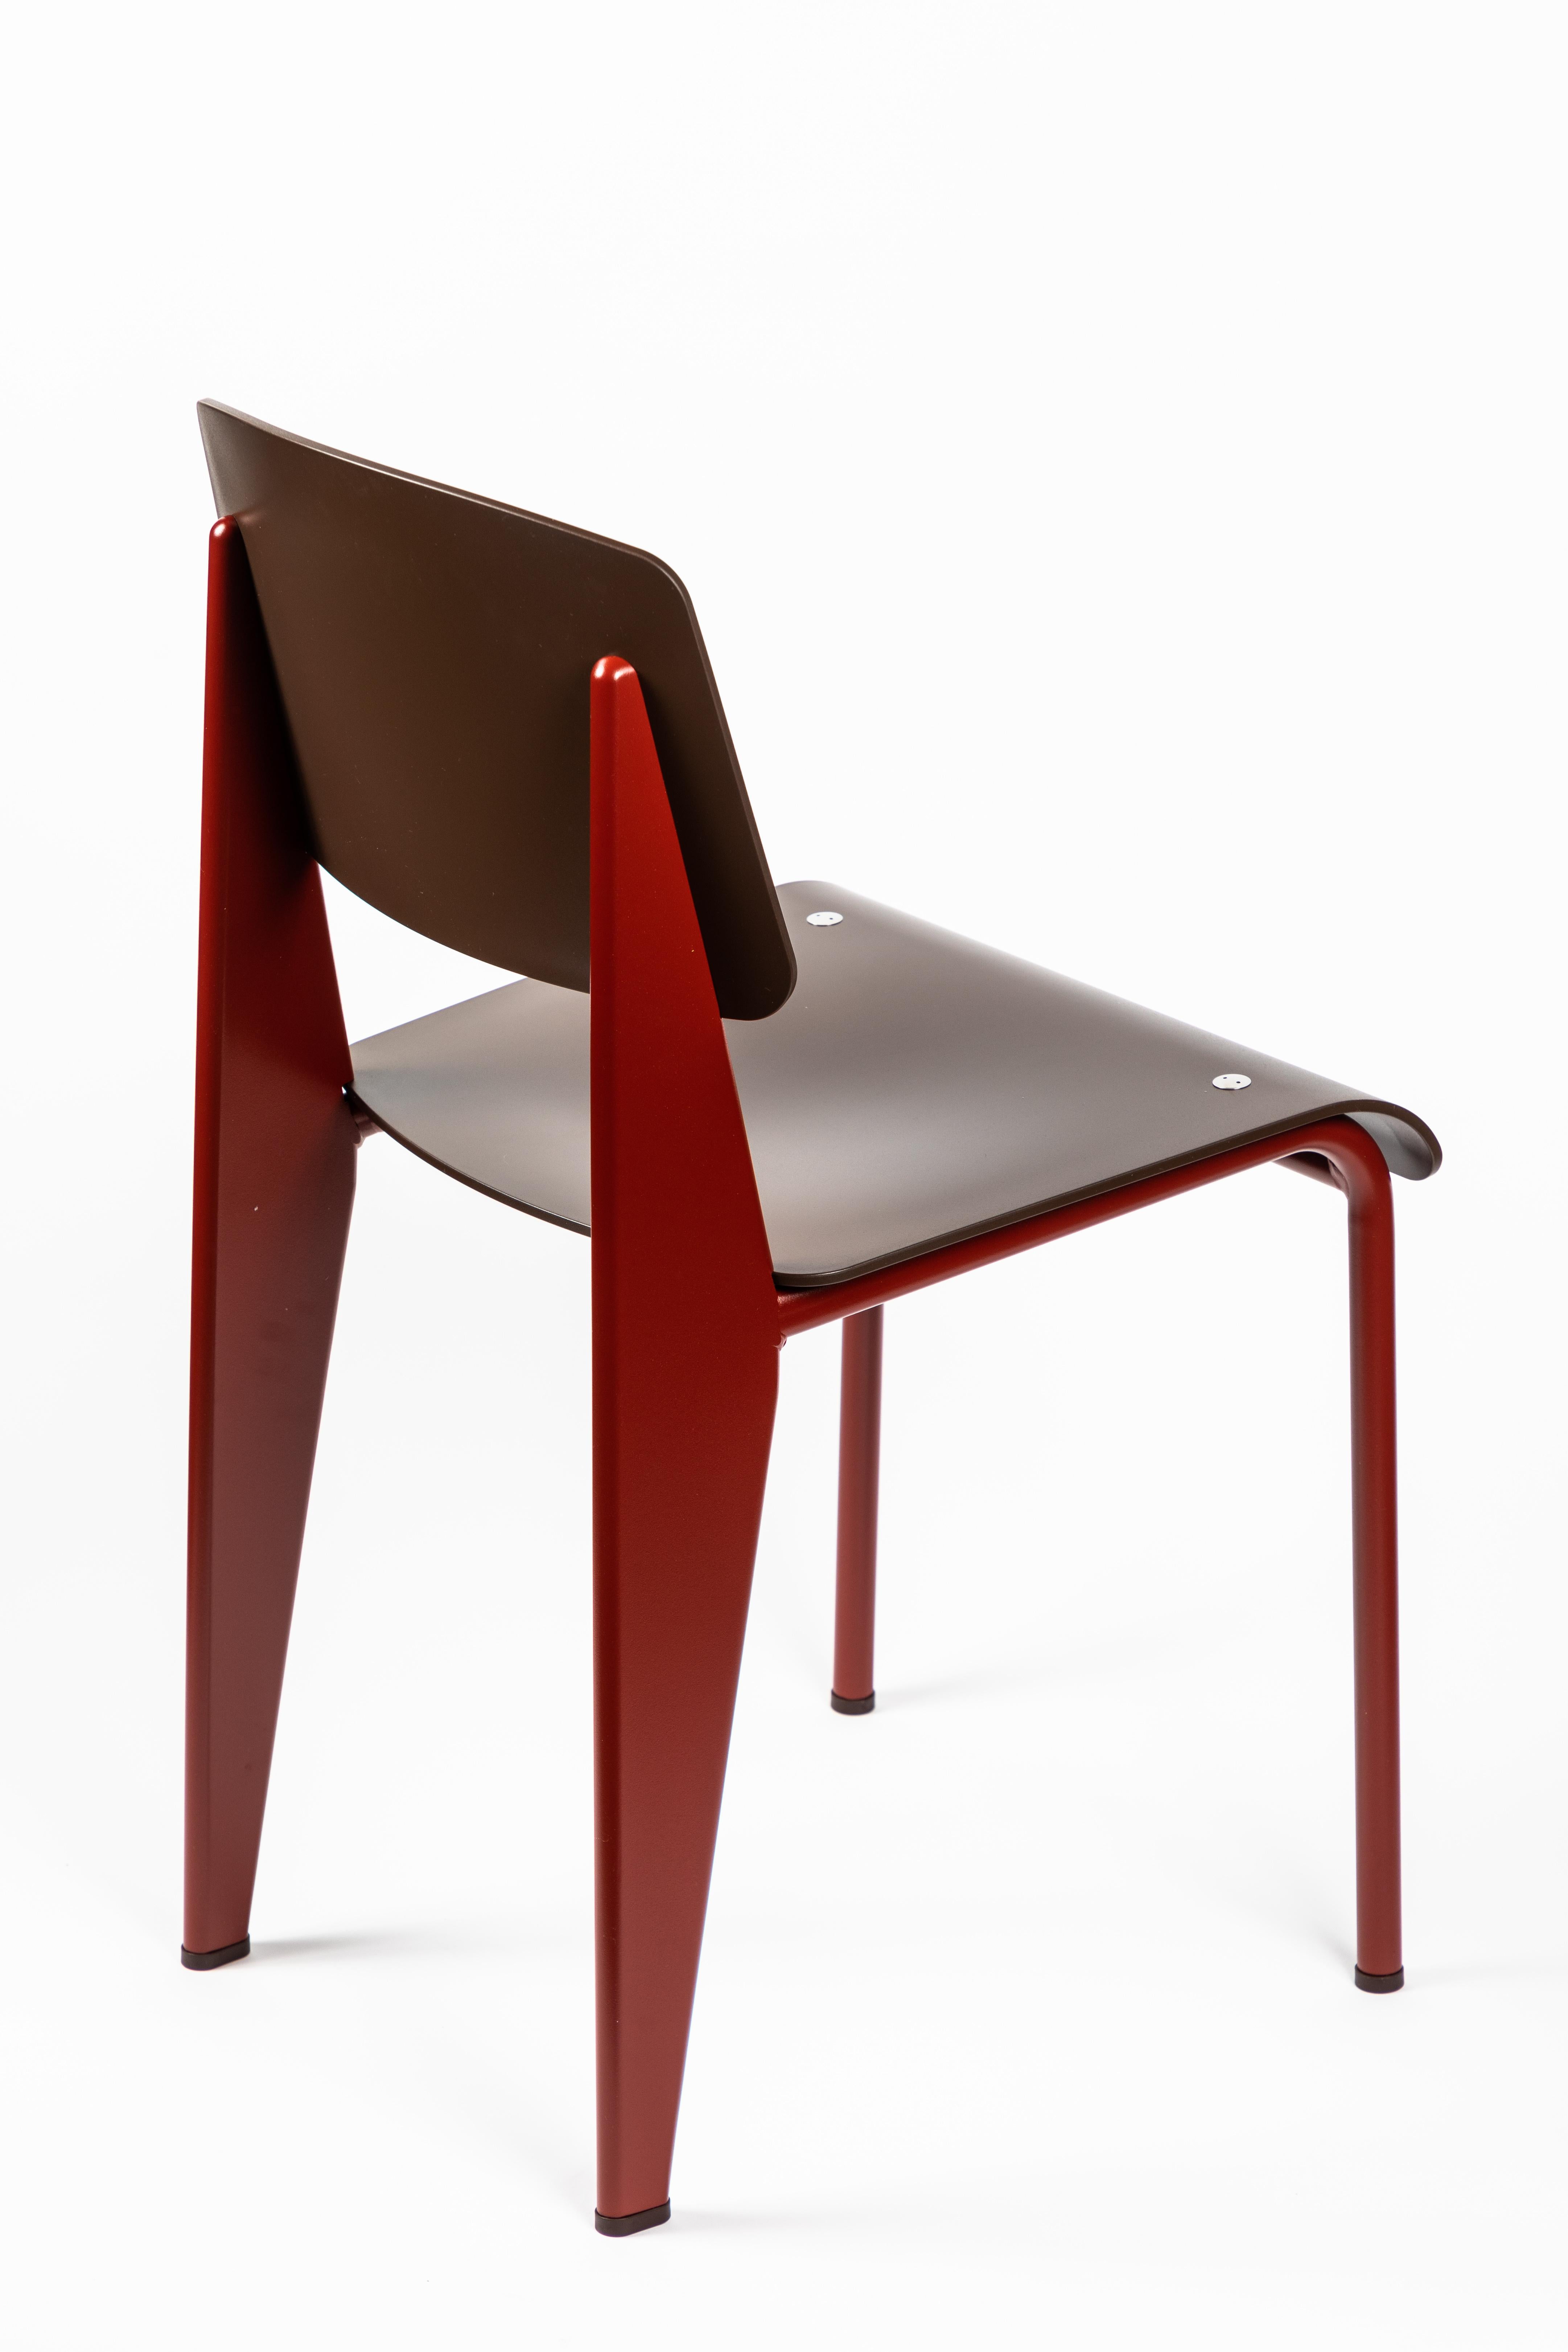 6 Stühle Jean Prouvé Standard SP in Teak Brown und Rot für Vitra (21. Jahrhundert und zeitgenössisch)